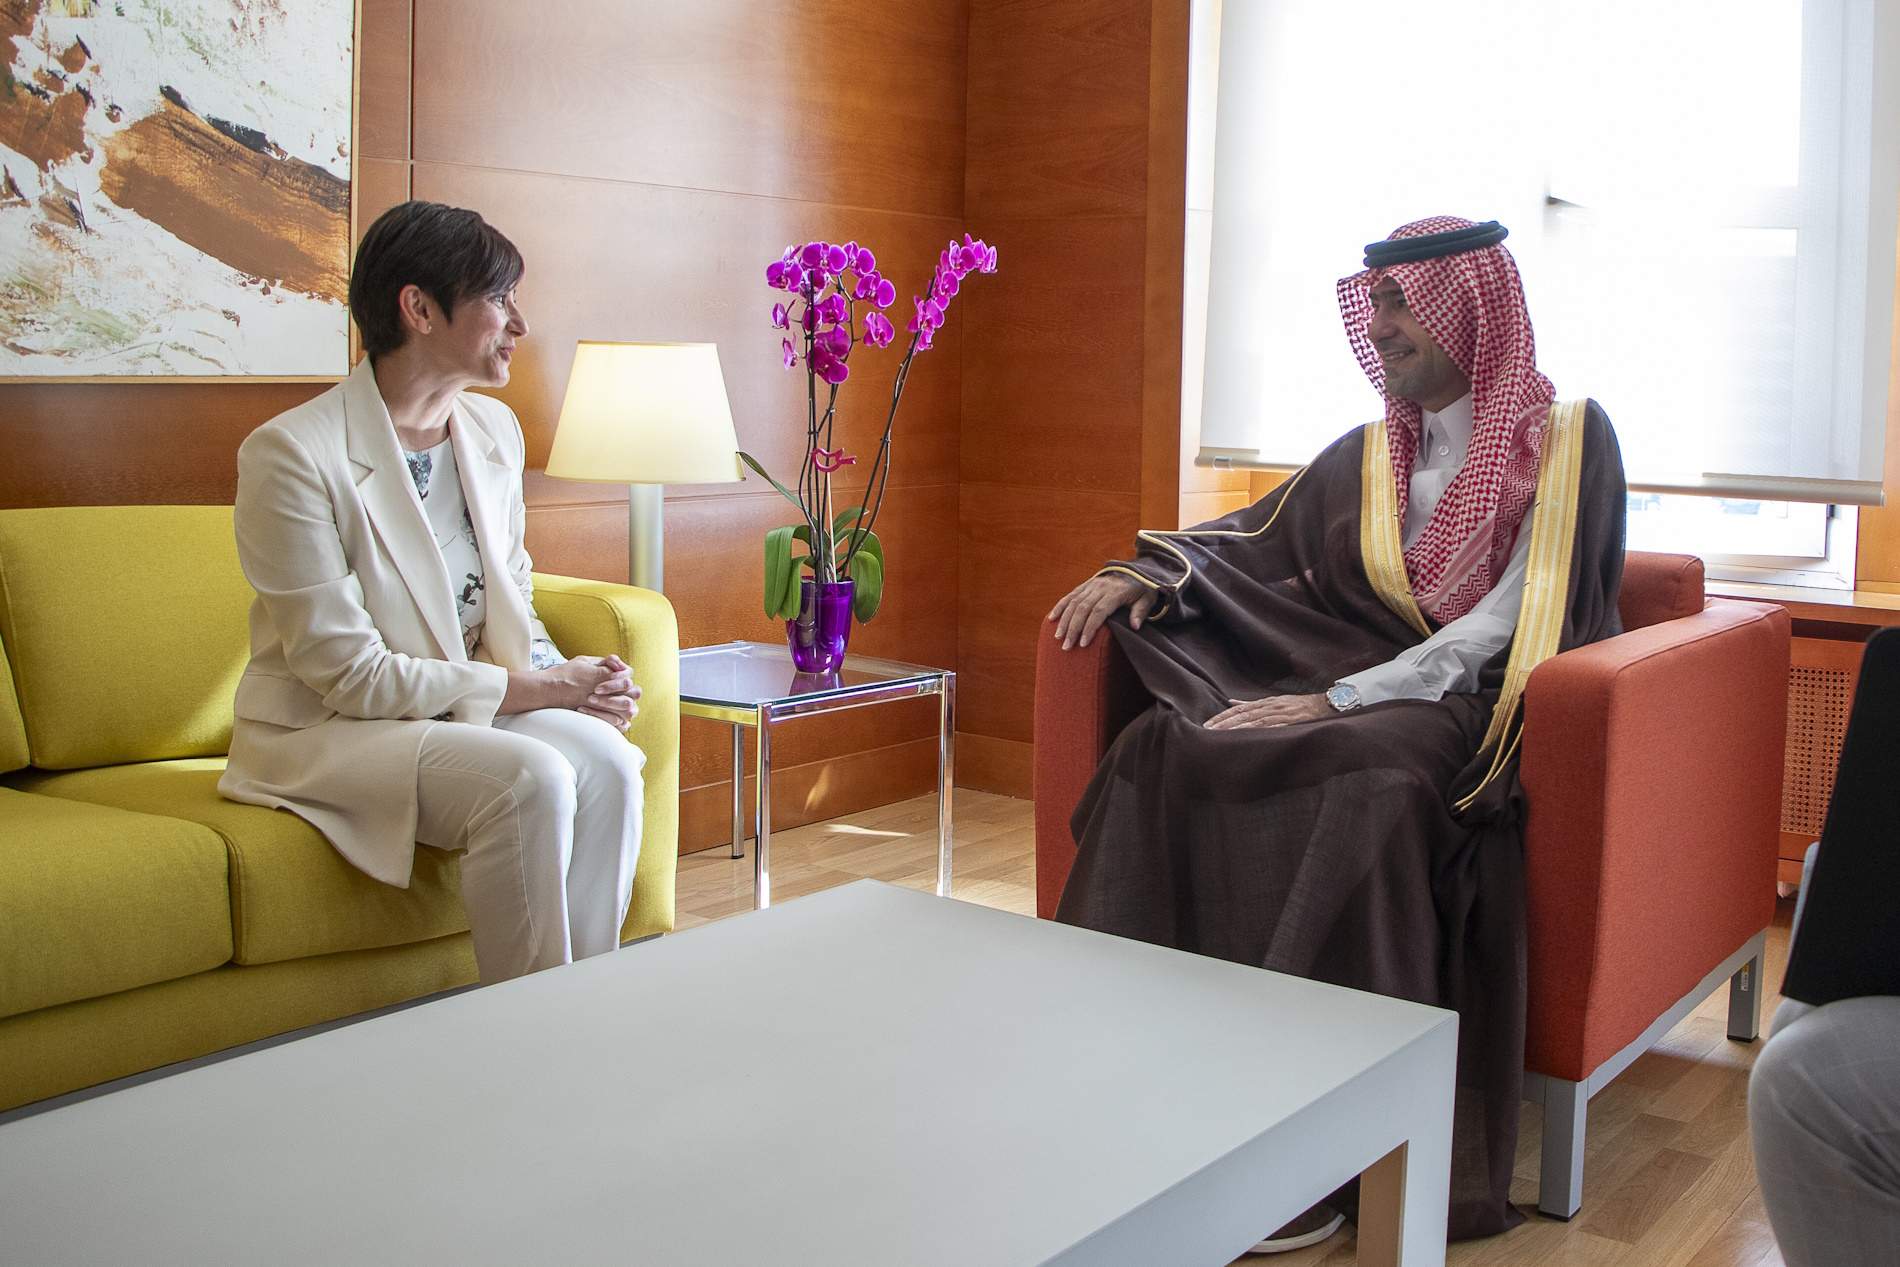 La ministra d'habitatge considera l'Aràbia Saudita un soci econòmic de vital importància per a Espanya